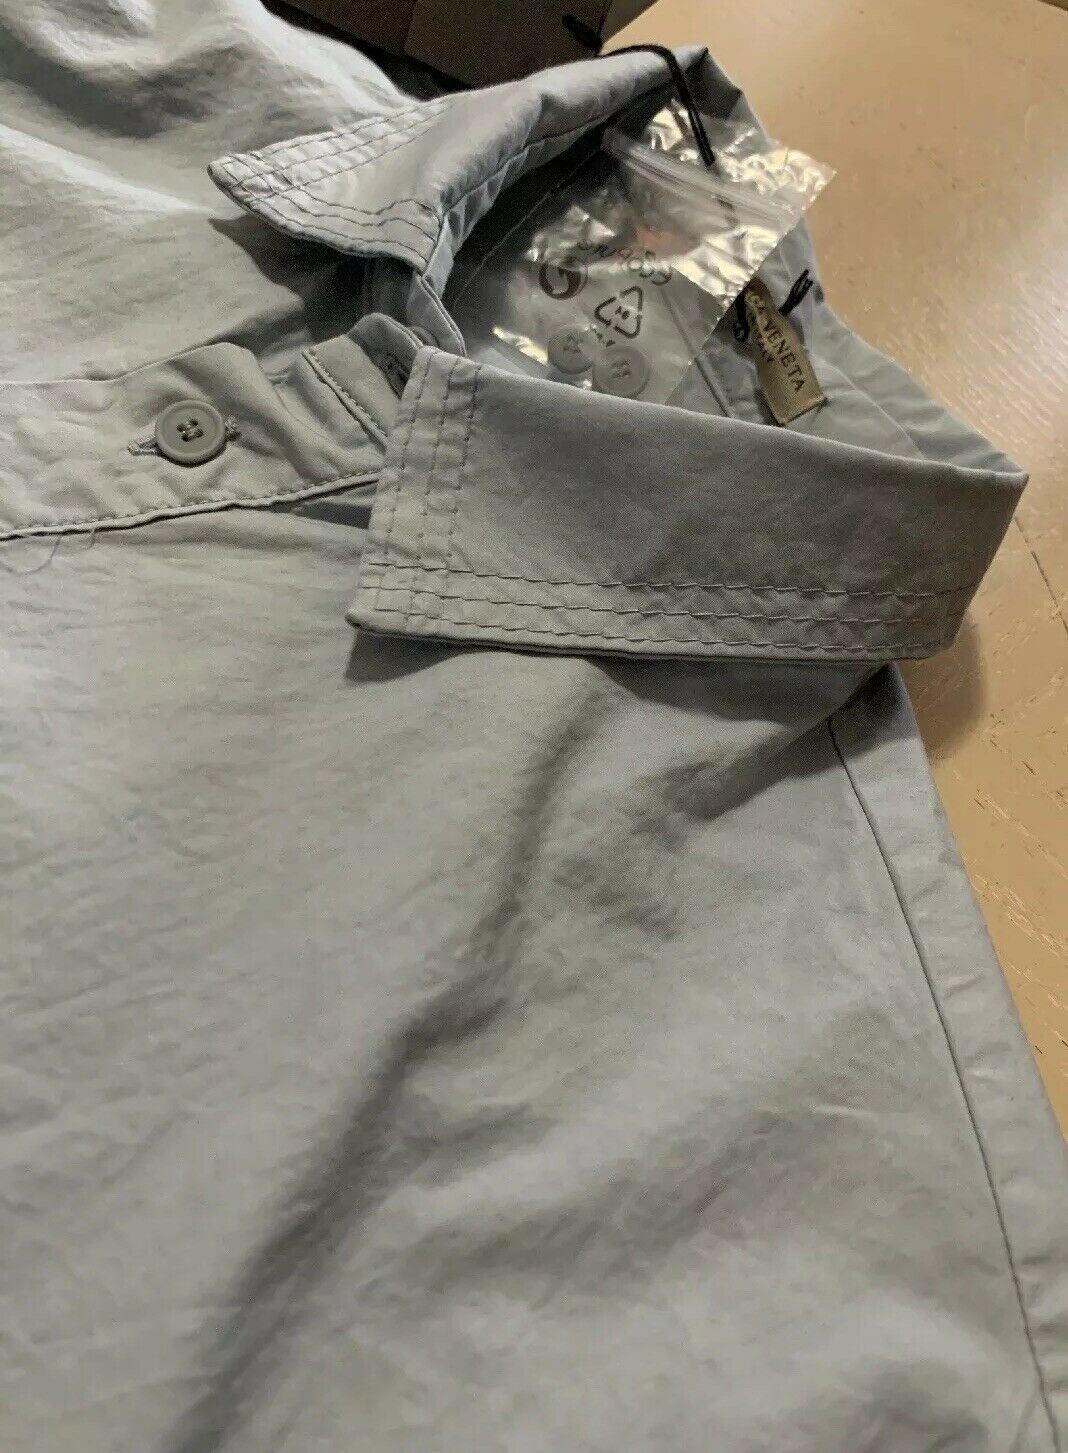 New $1190 Bottega Veneta Mens Suit ( Shirt .Pants ) Color Artic Size 30 US/46 Eu